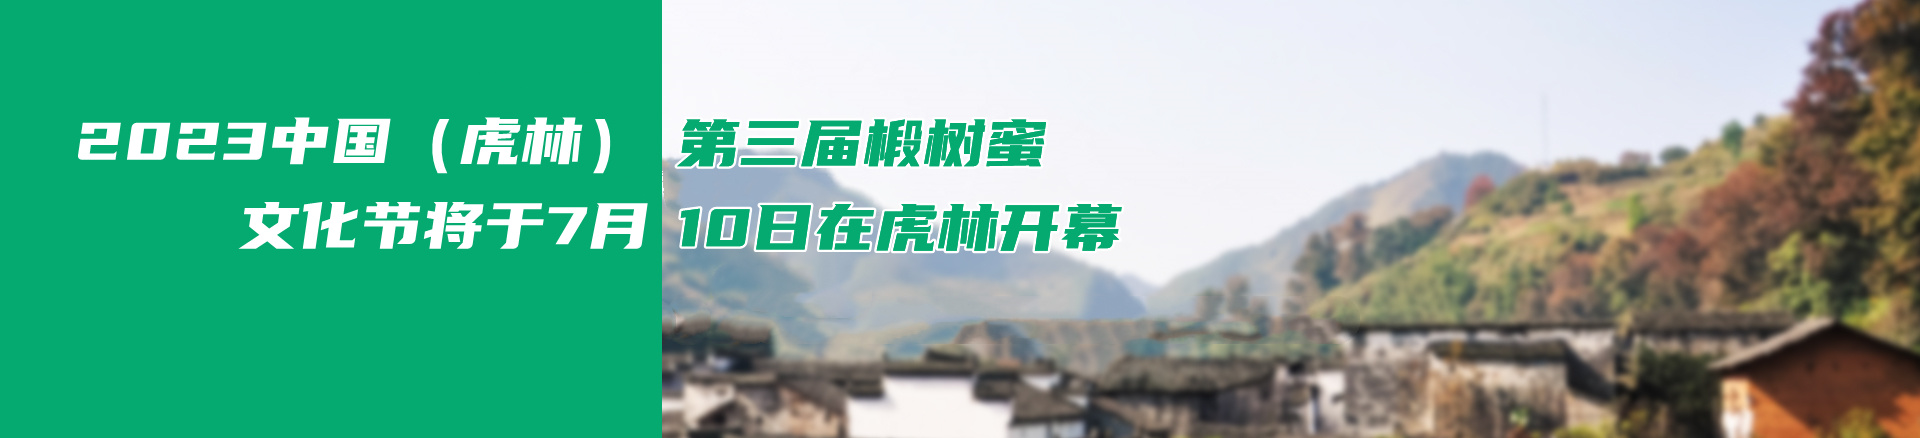 2023中国（虎林）第三届椴树蜜文化节将于7月10日在虎林开幕